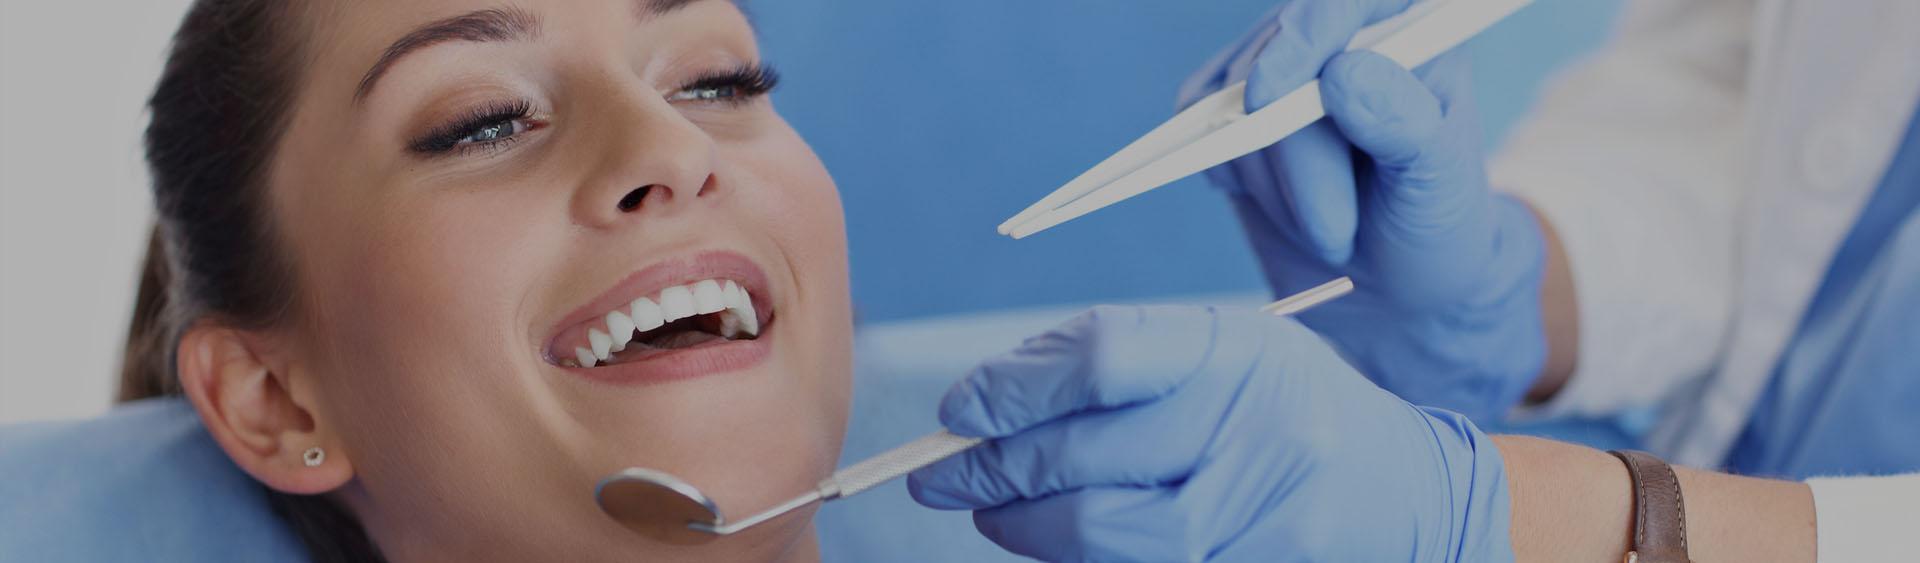 Pacjentka podczas zabiegu stomatologicznego